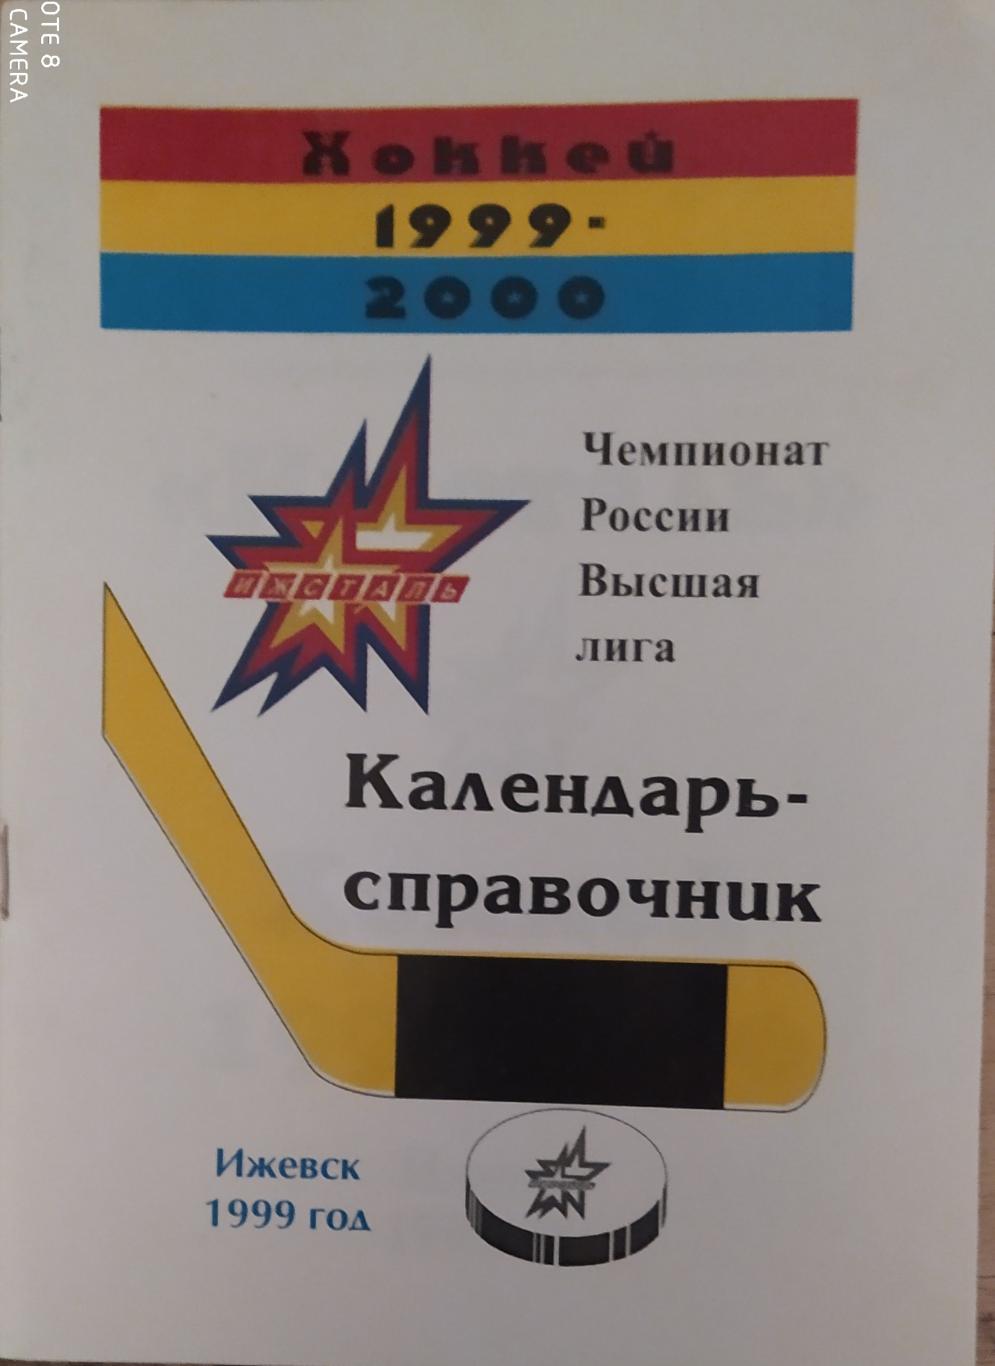 Ижевск 1999-2000